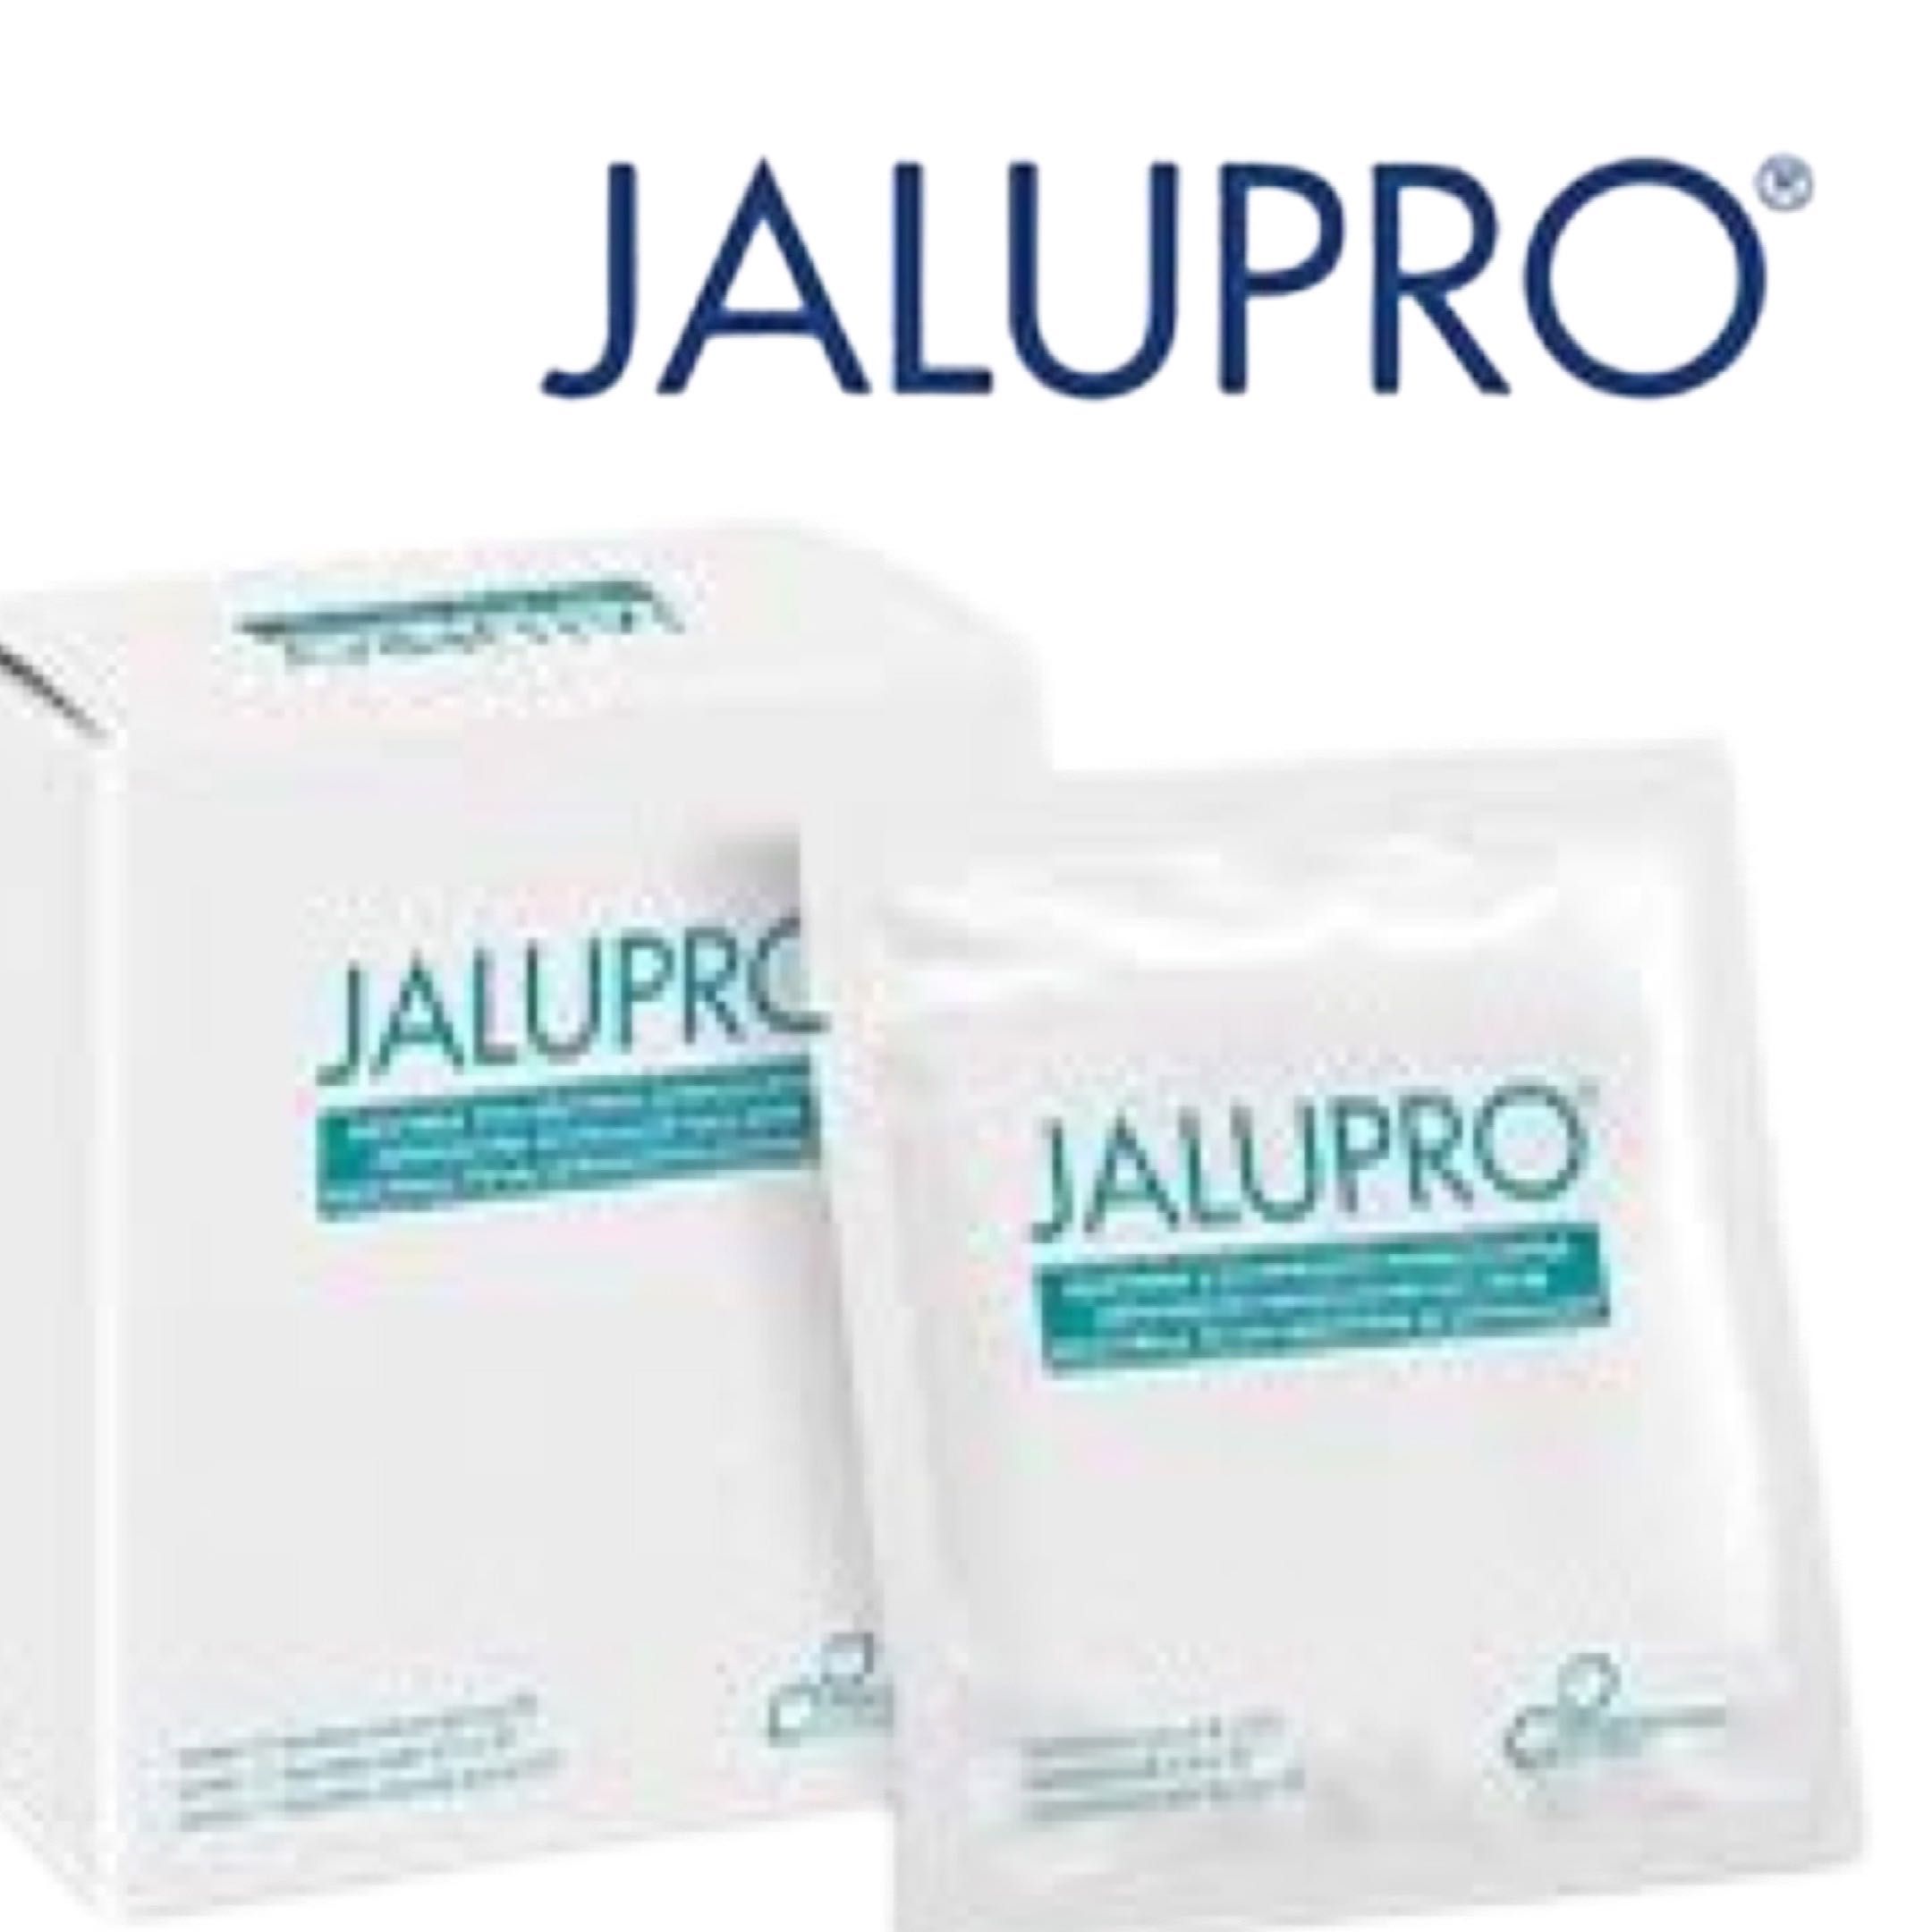 JALUPRO face mask portfolio